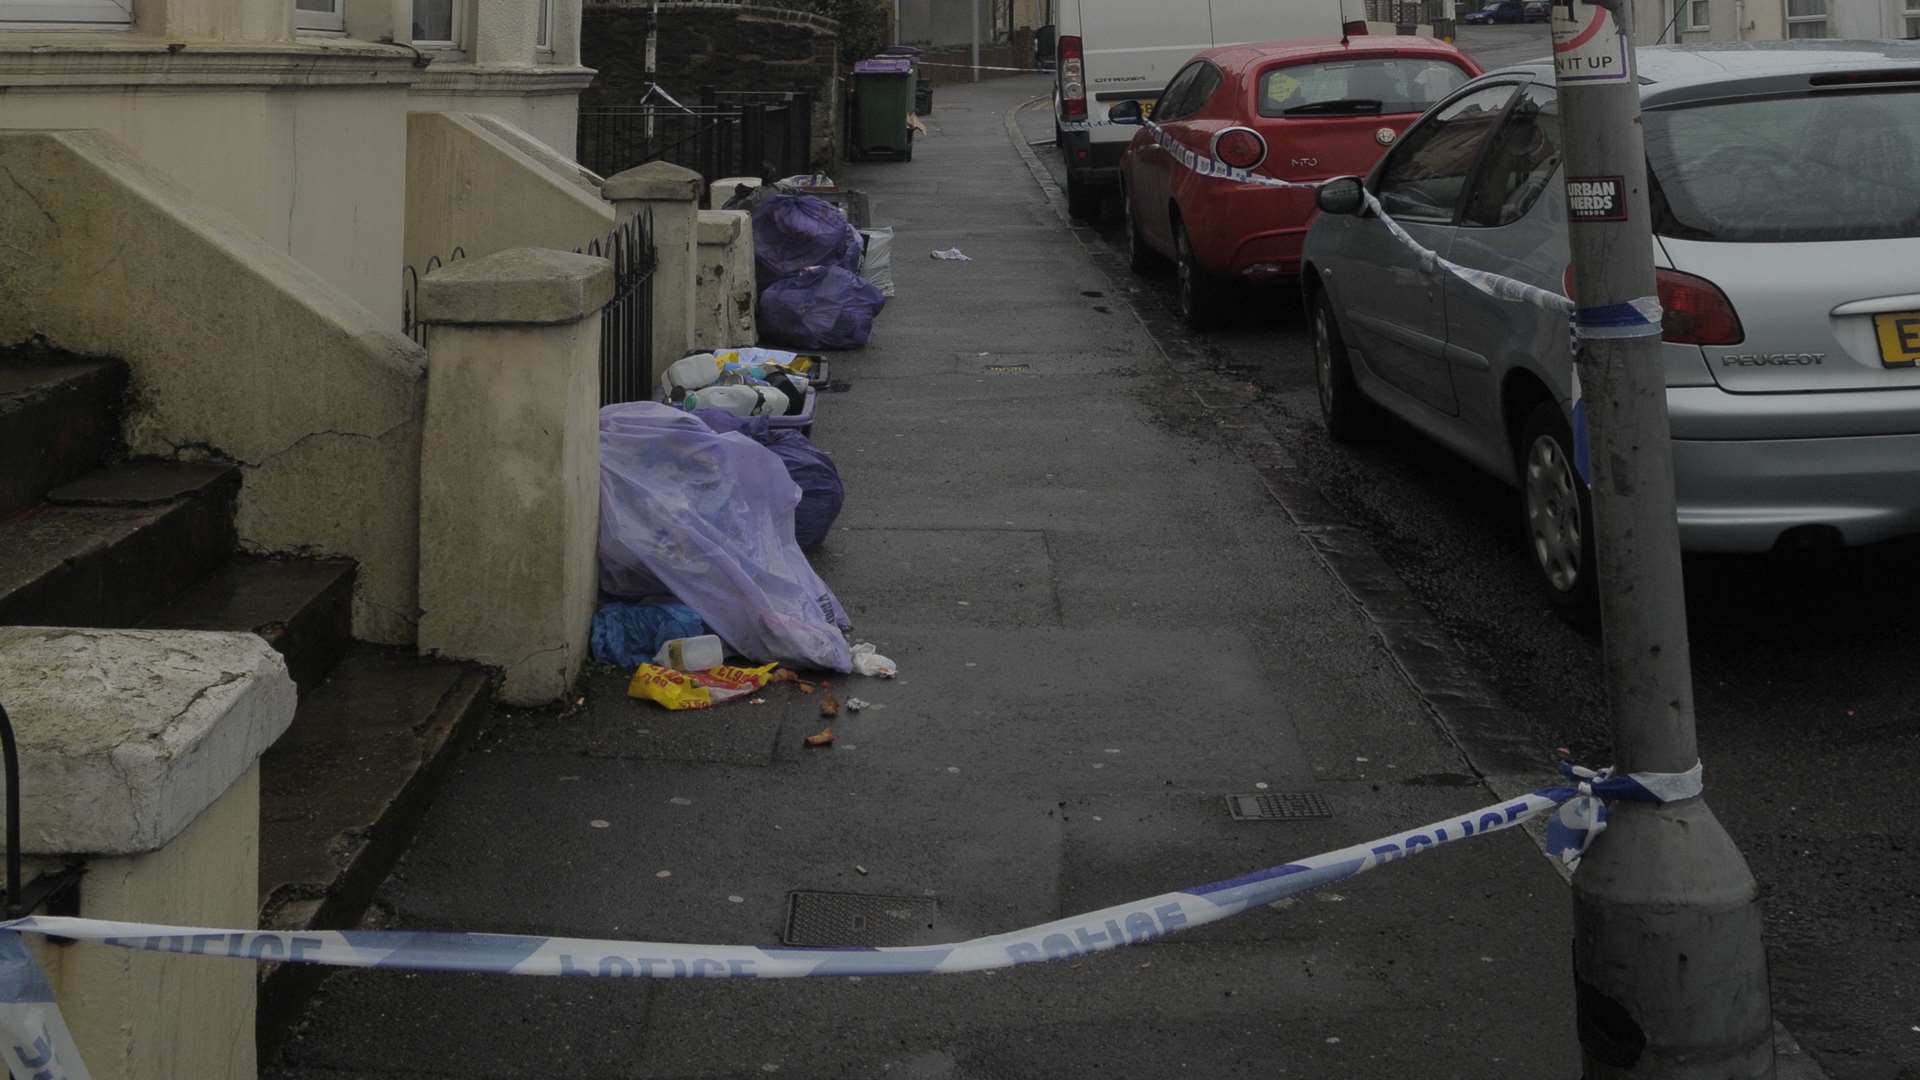 The scene of the fatal stabbing in Dover Road, Folkestone